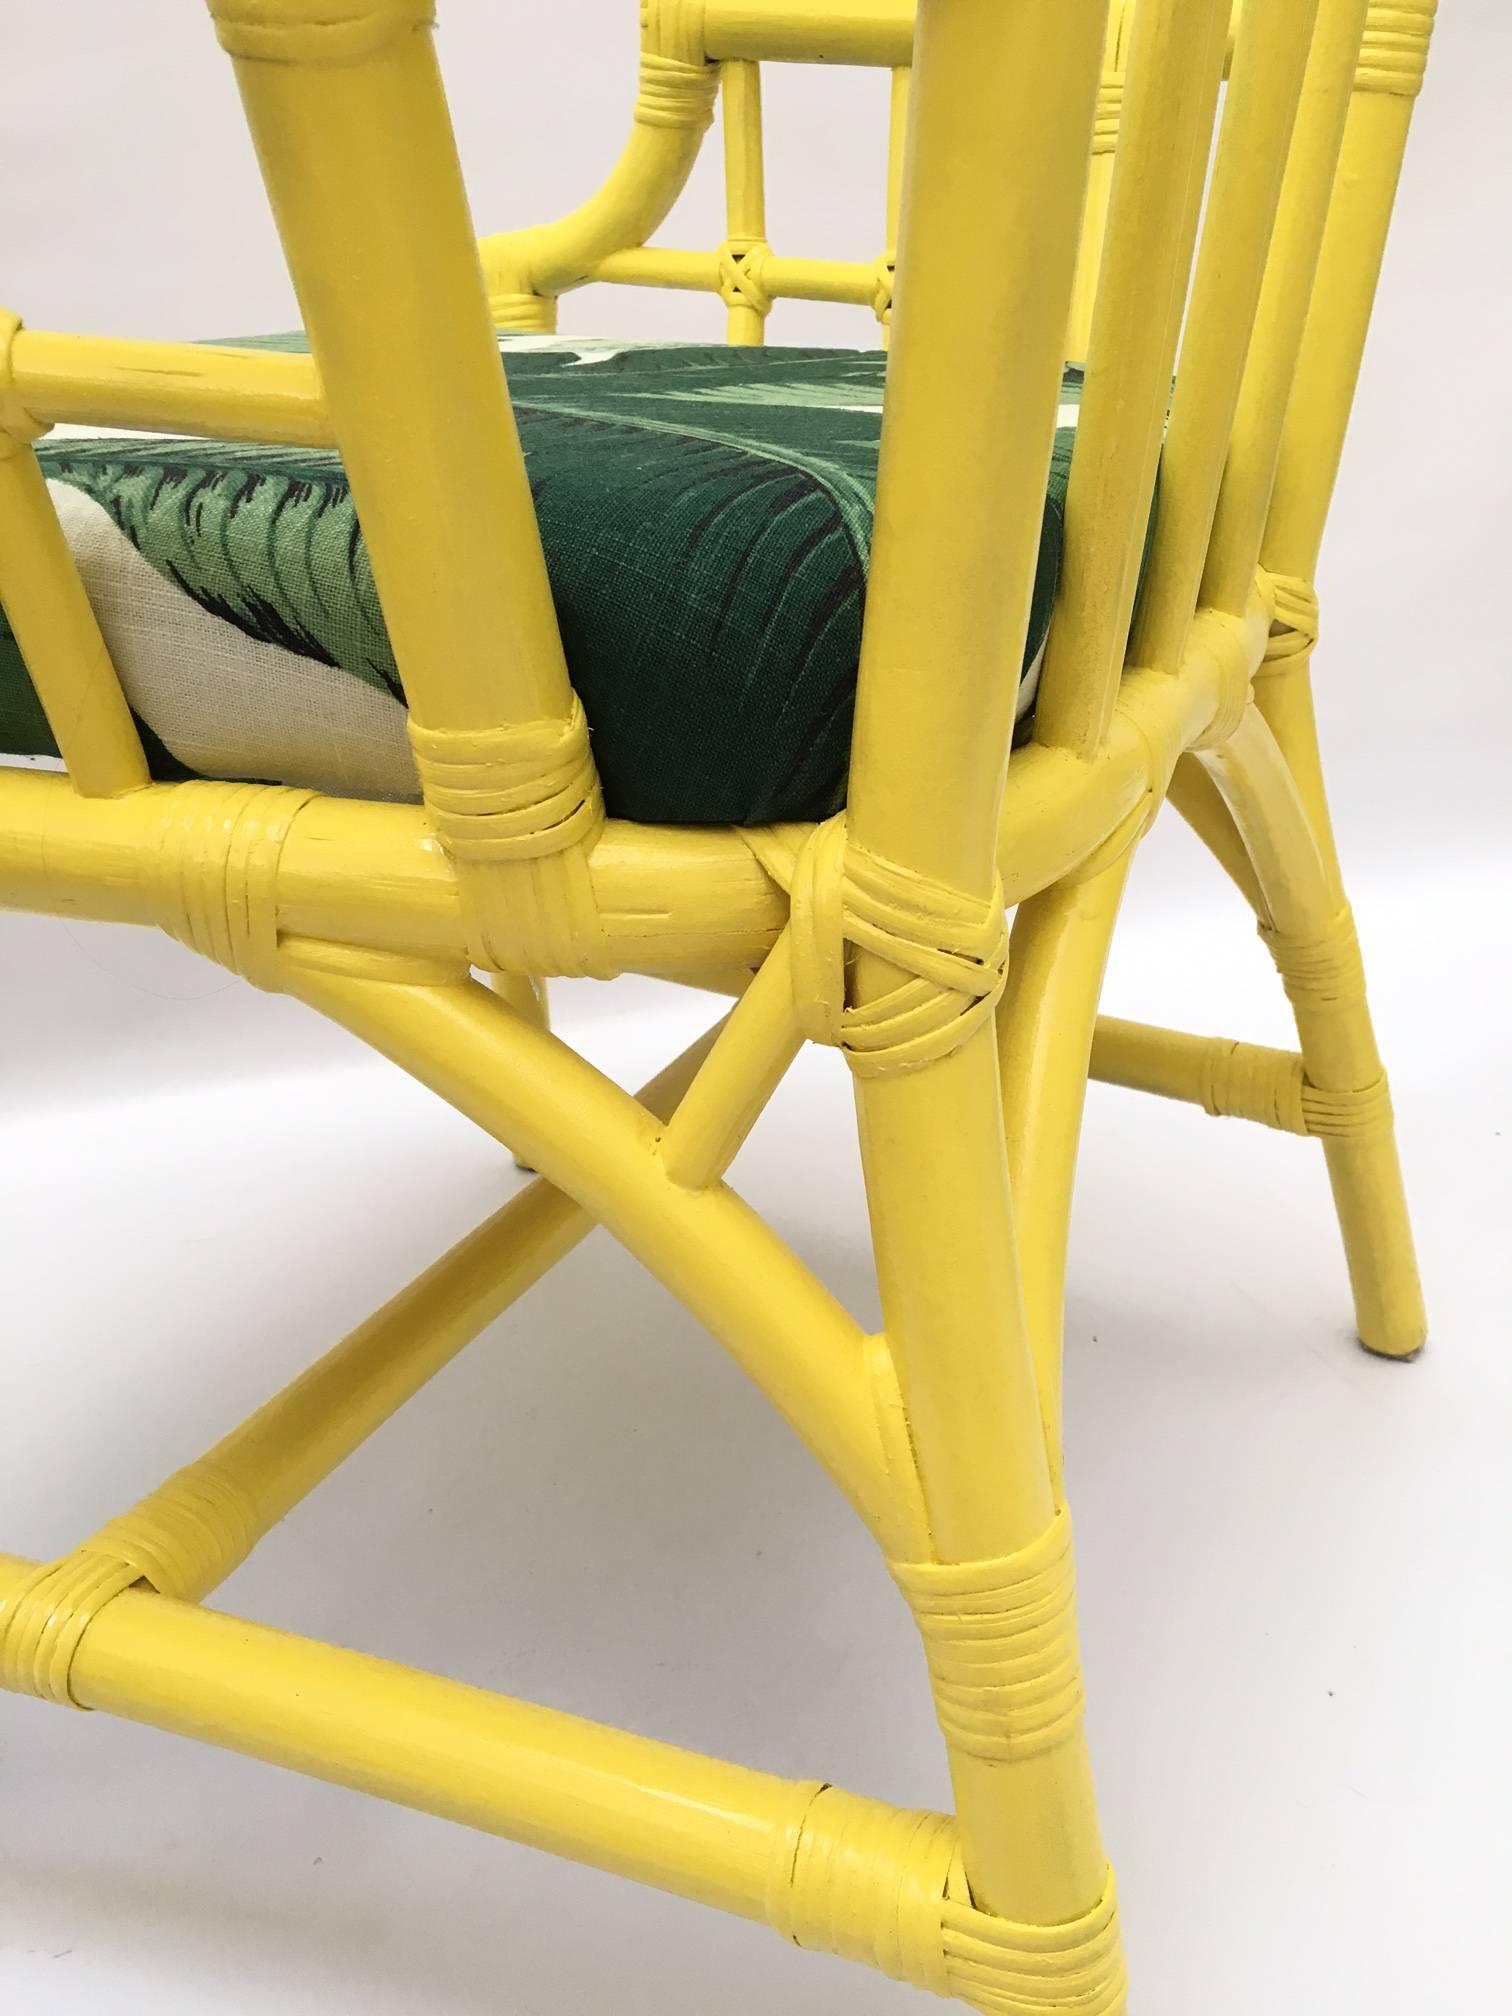 banana leaf print chairs